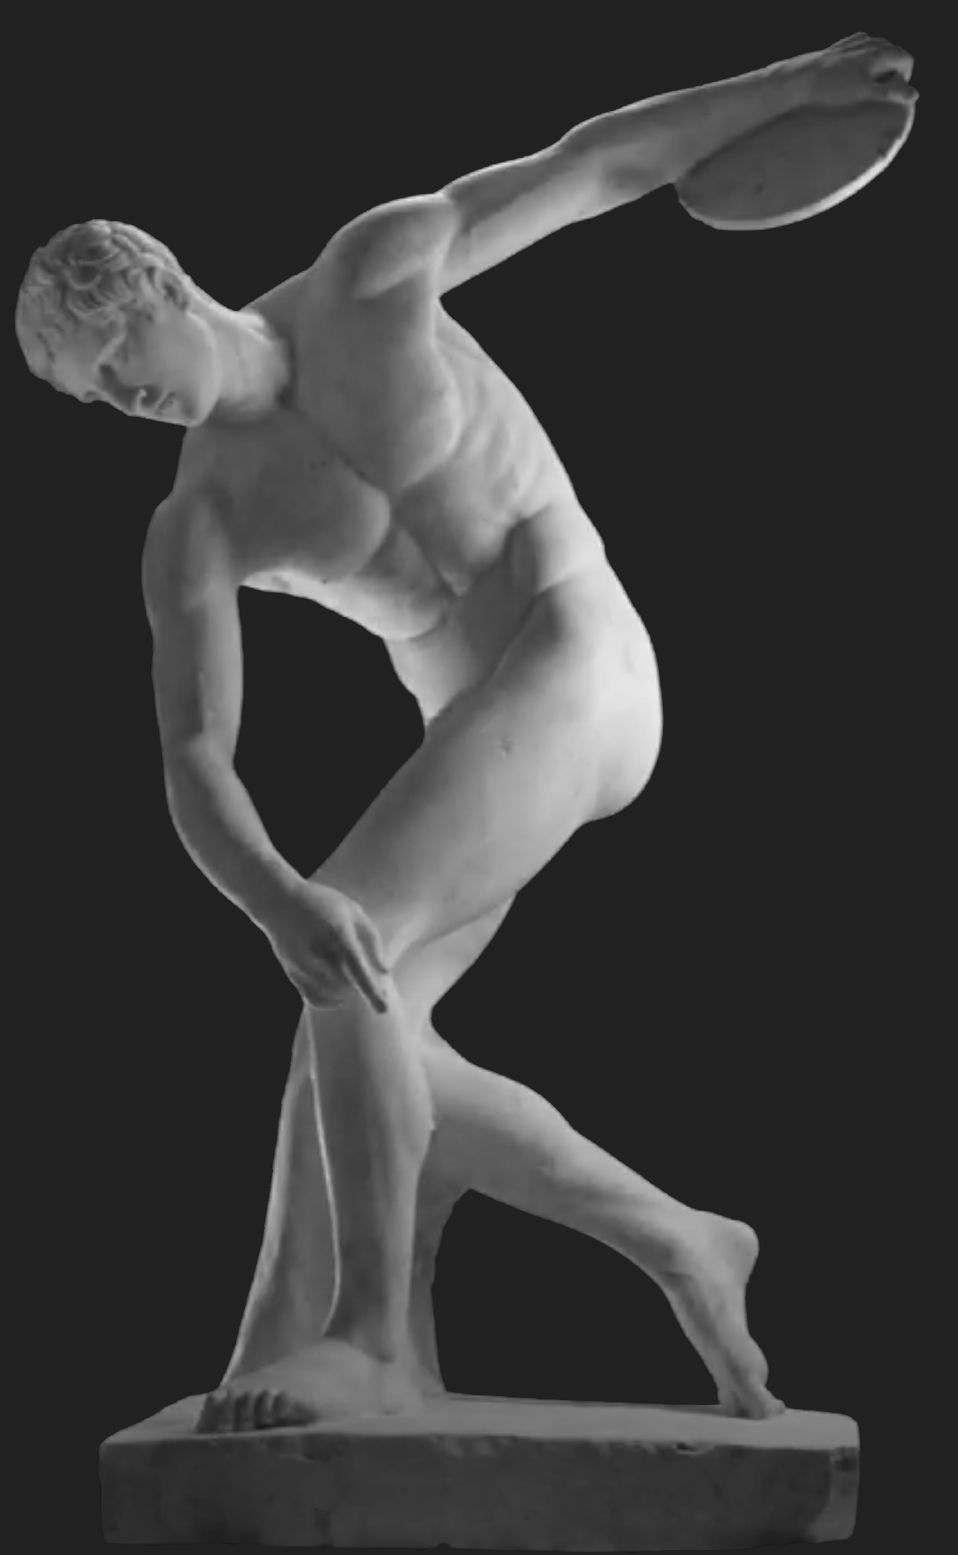 Statue of Discobolus showing self-discipline